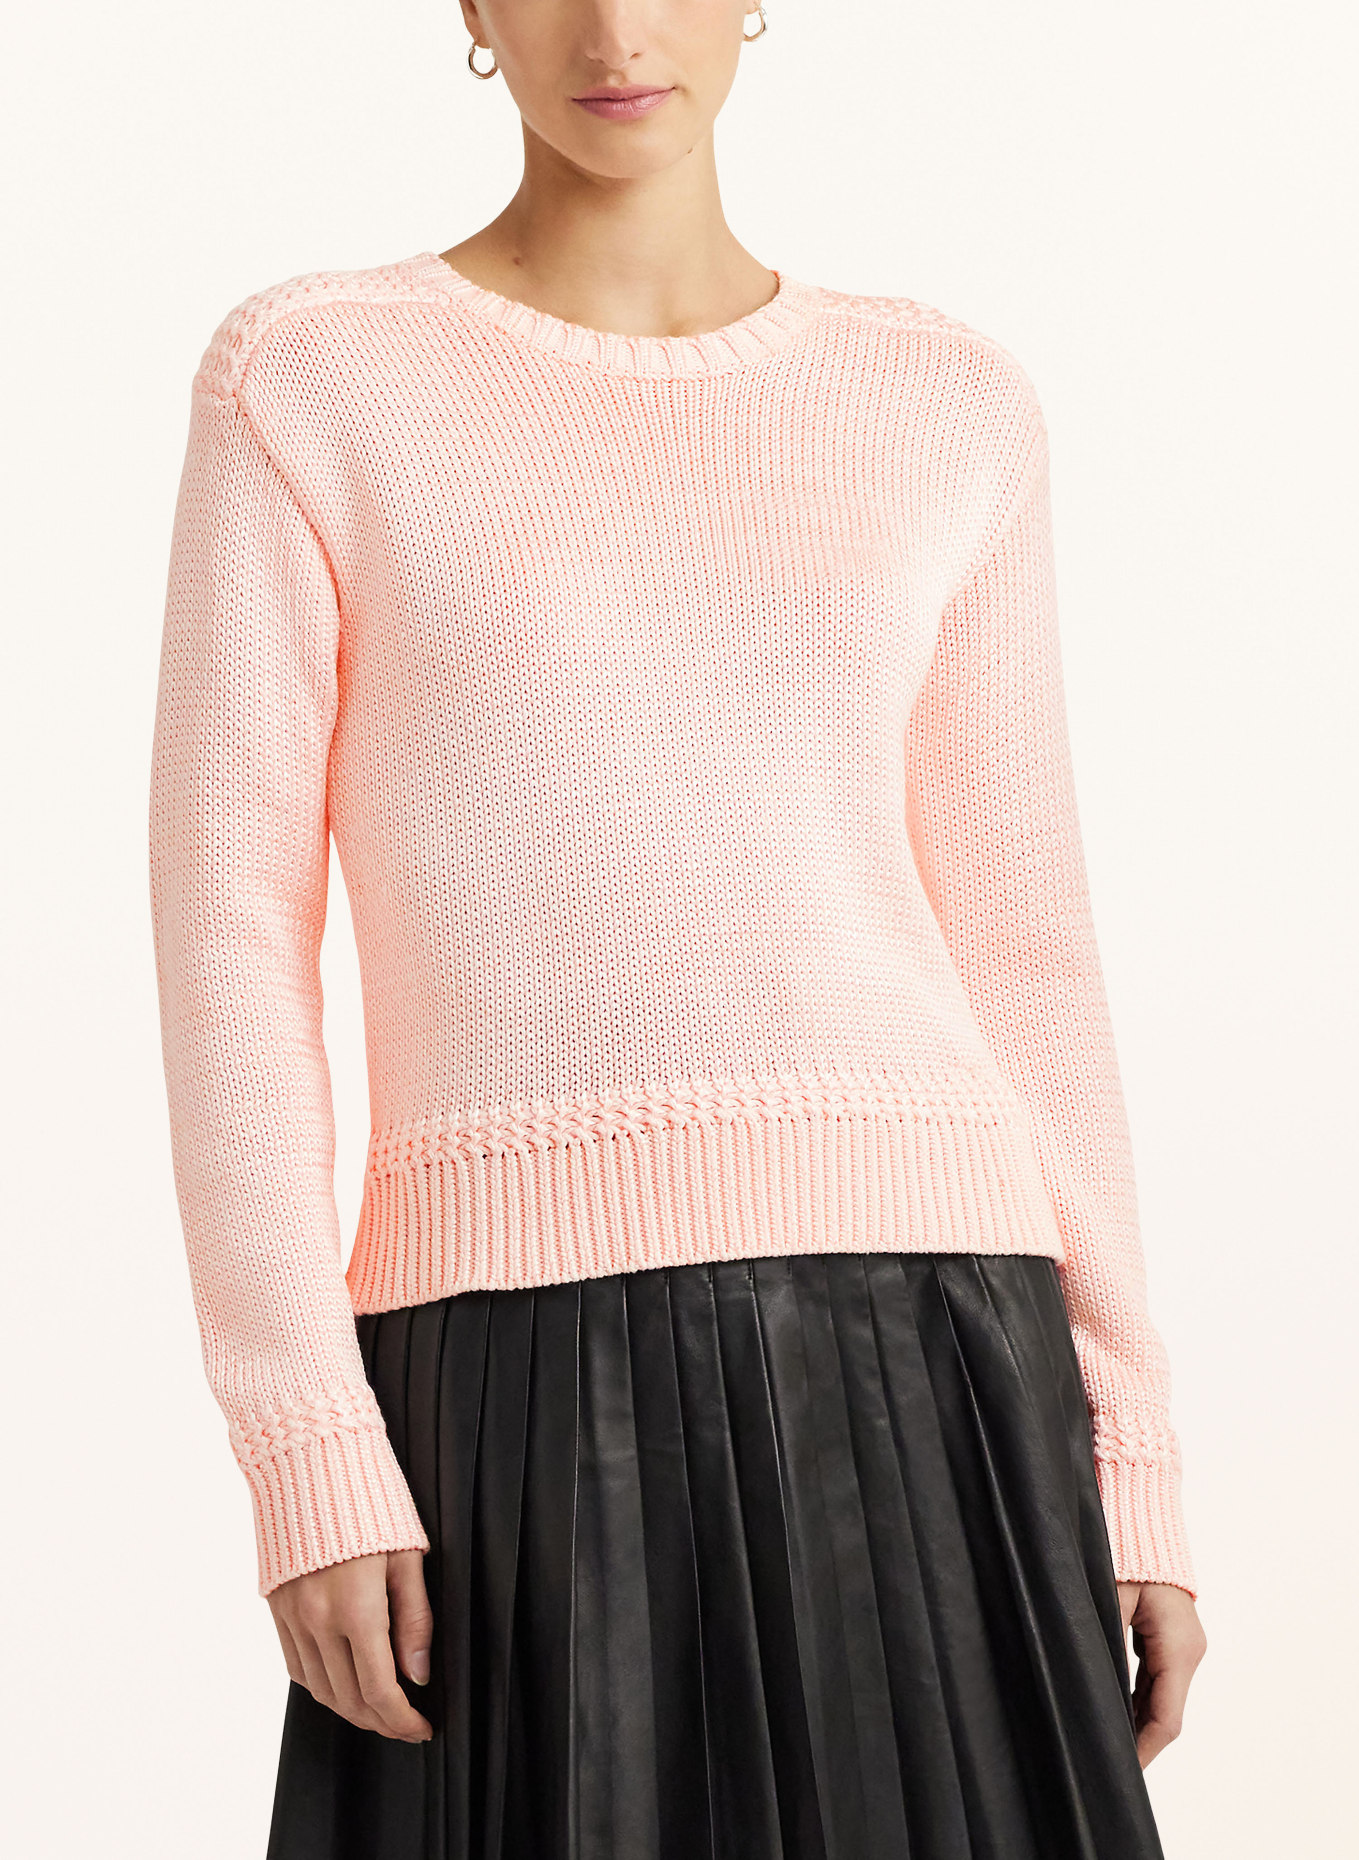 LAUREN RALPH LAUREN Sweater, Color: LIGHT PINK (Image 4)